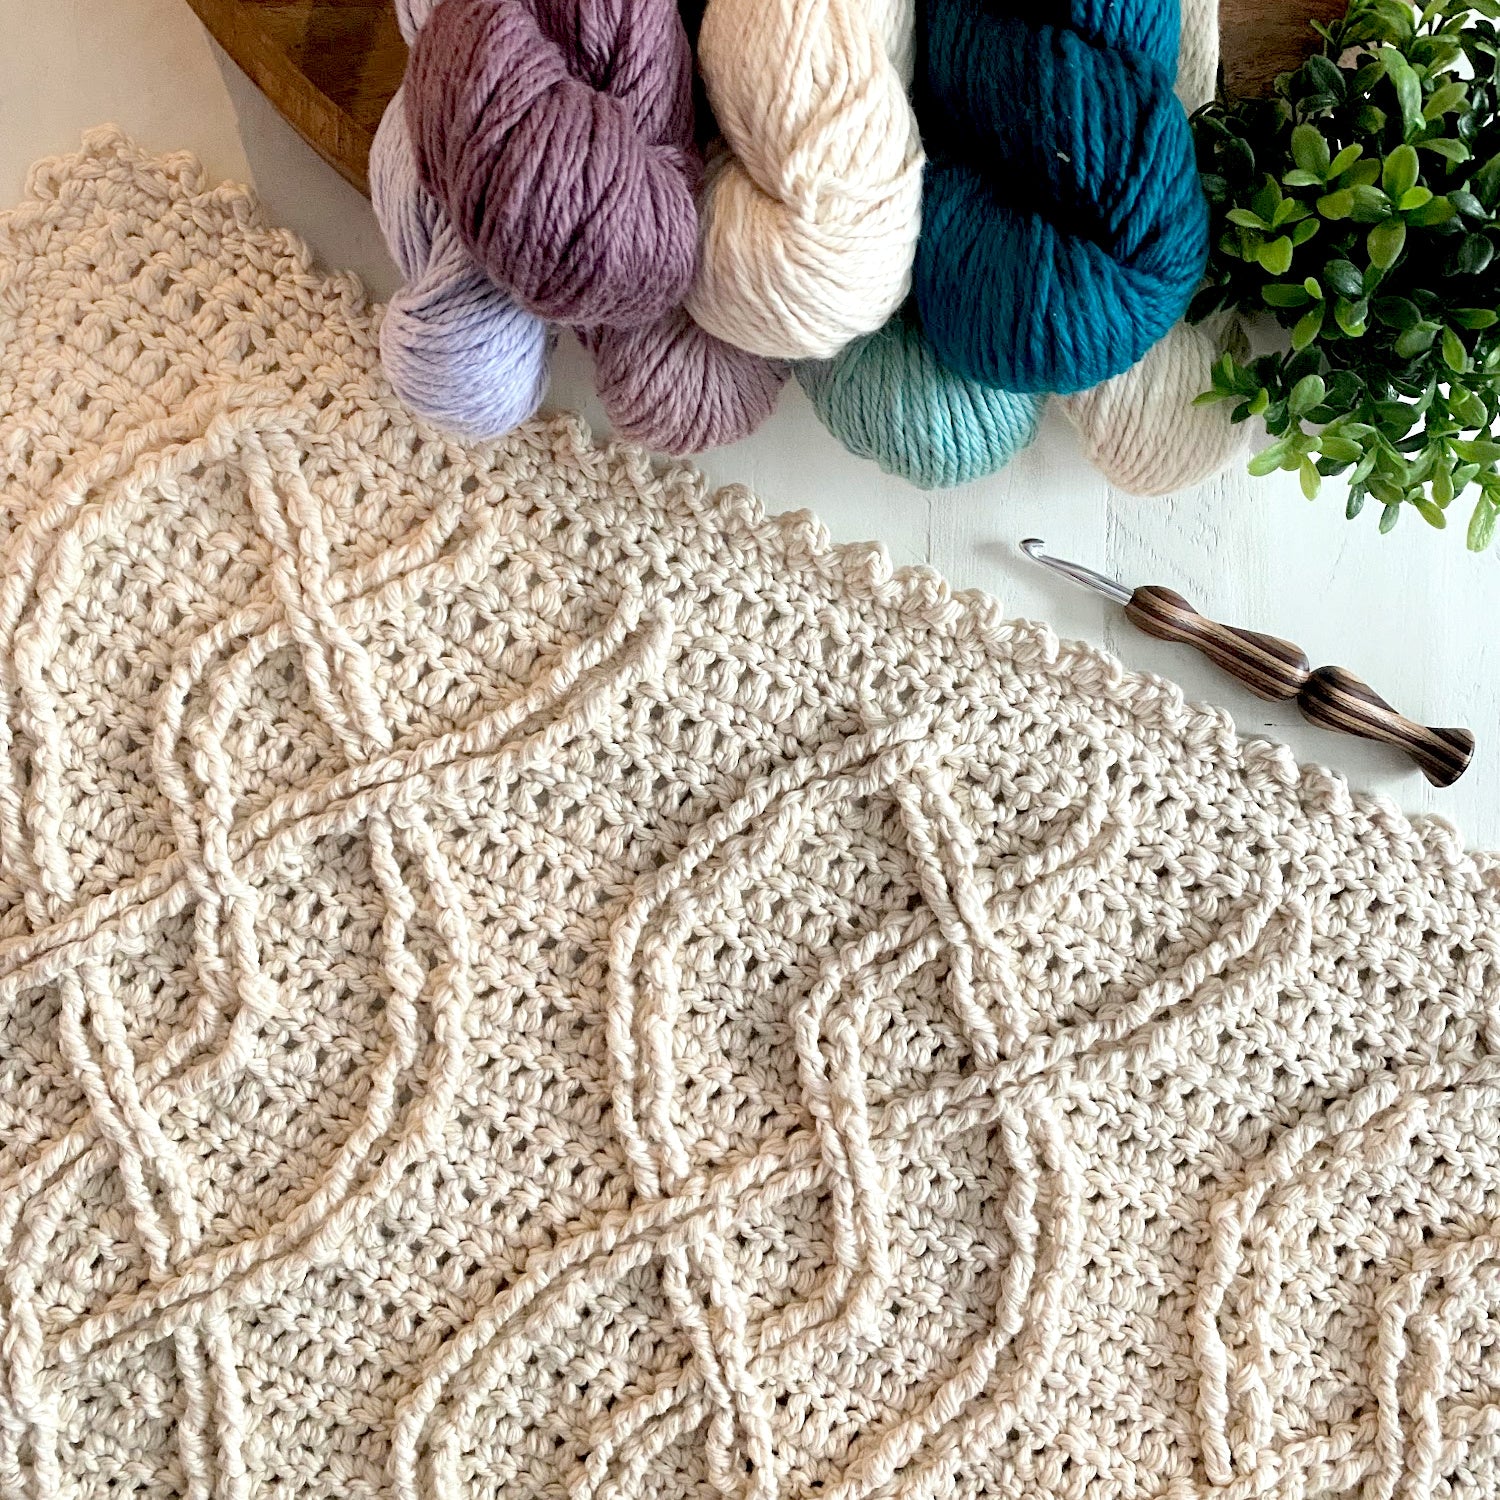 Make This Beginner Crochet Cable Blanket + Full Video Tutorial!